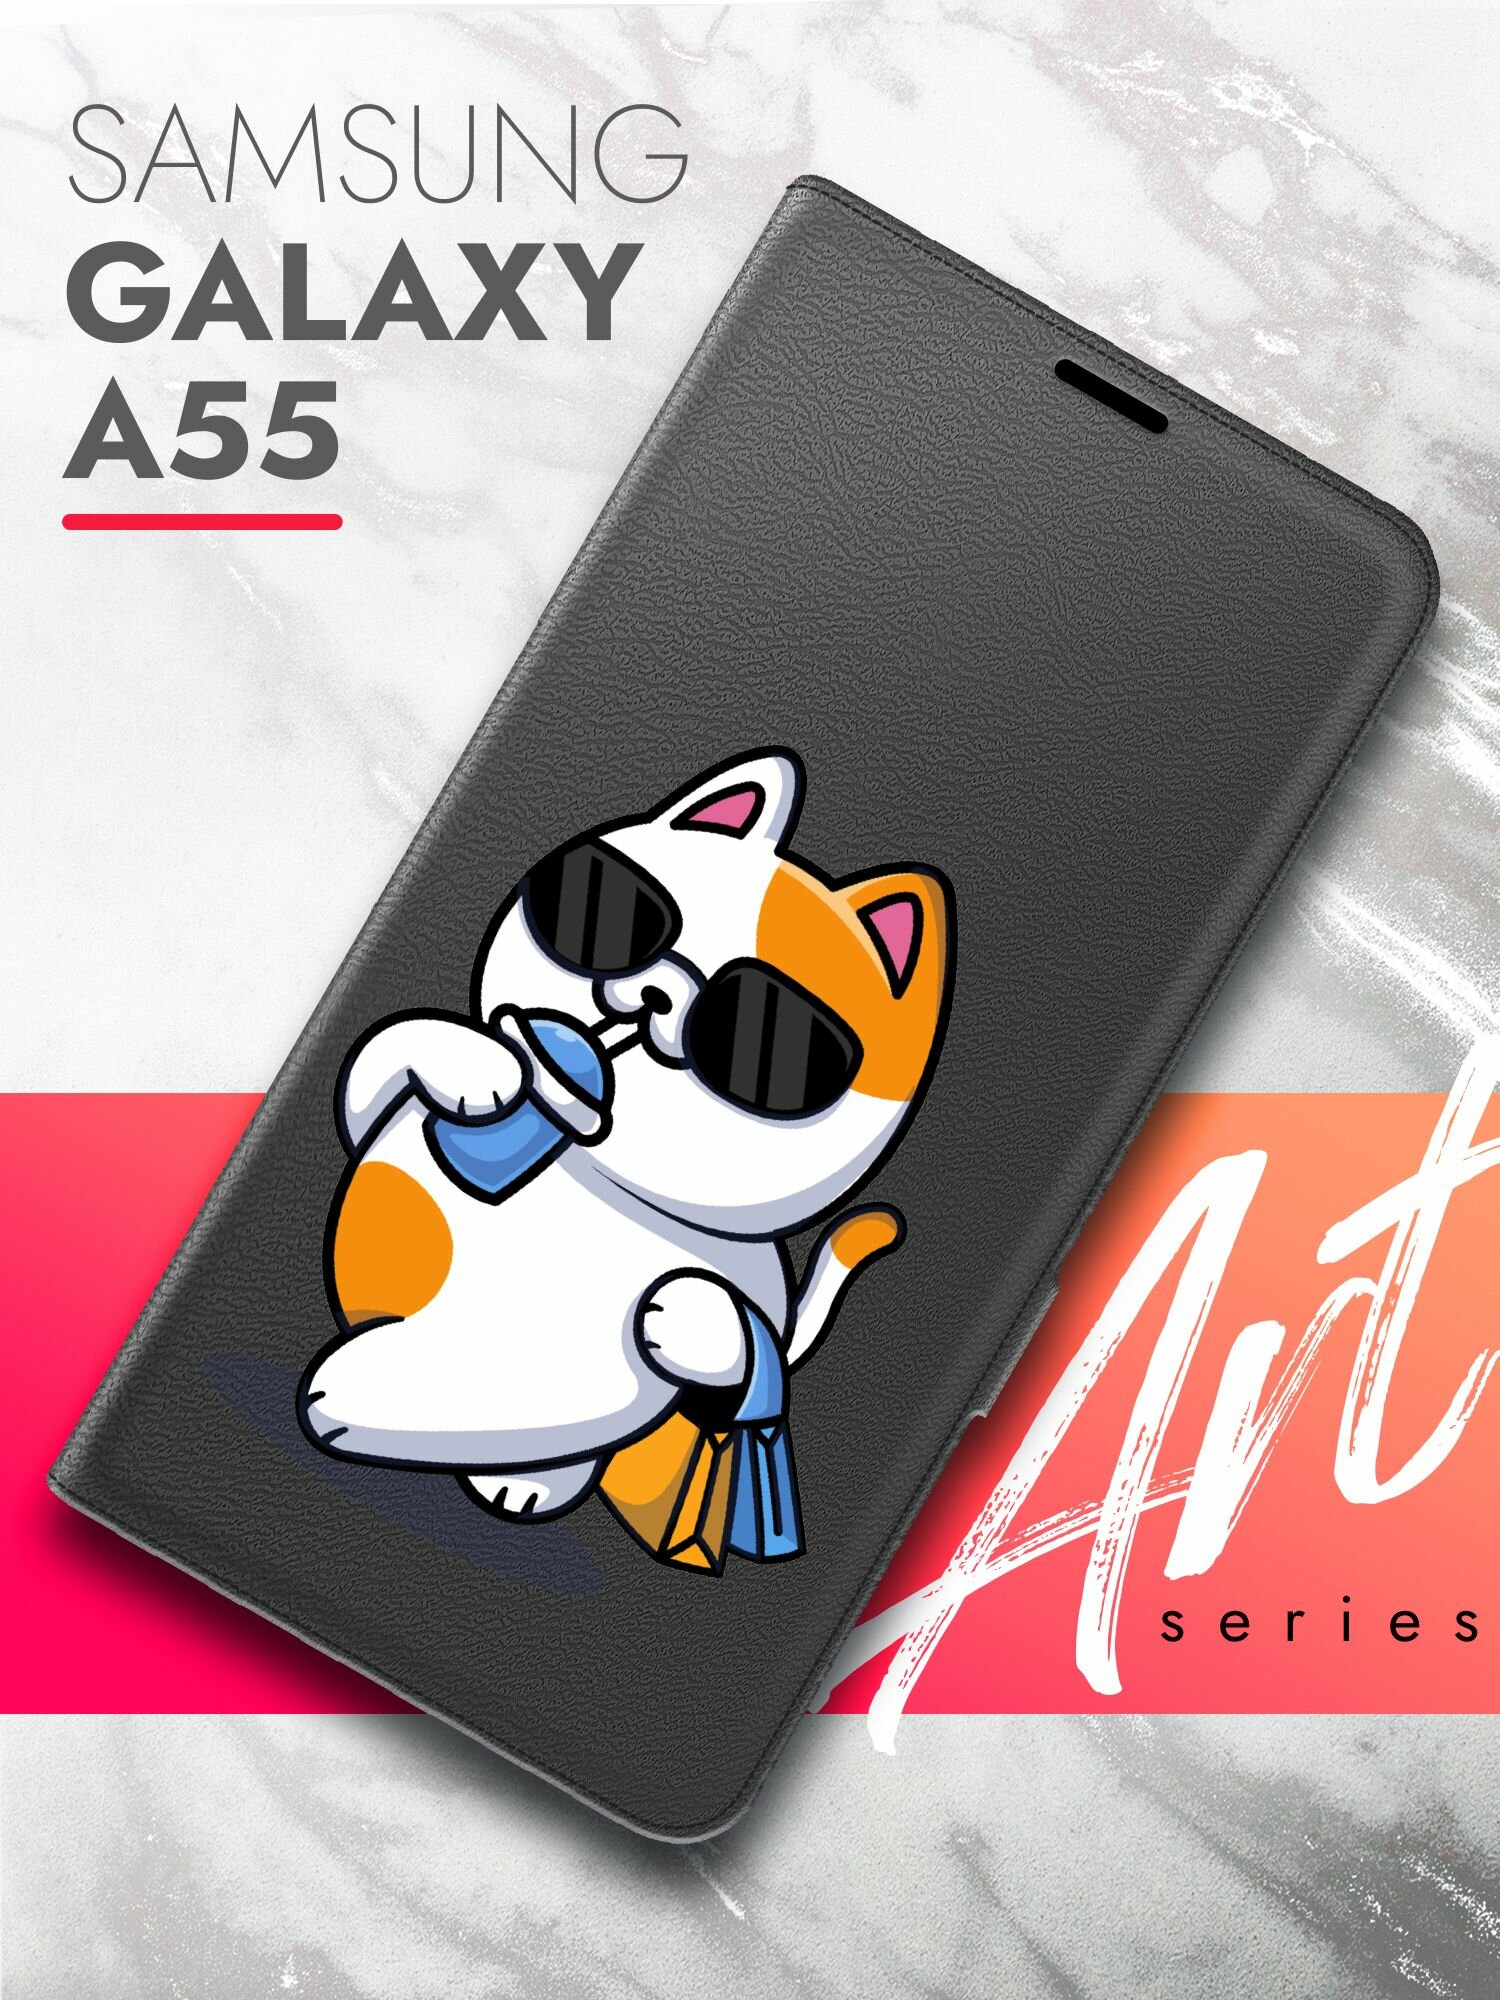 Чехол на Samsung Galaxy A55 (Самсунг Галакси А55) черный книжка эко-кожа подставка отделение для карт магнит Book case, Brozo (принт) Котик пьет